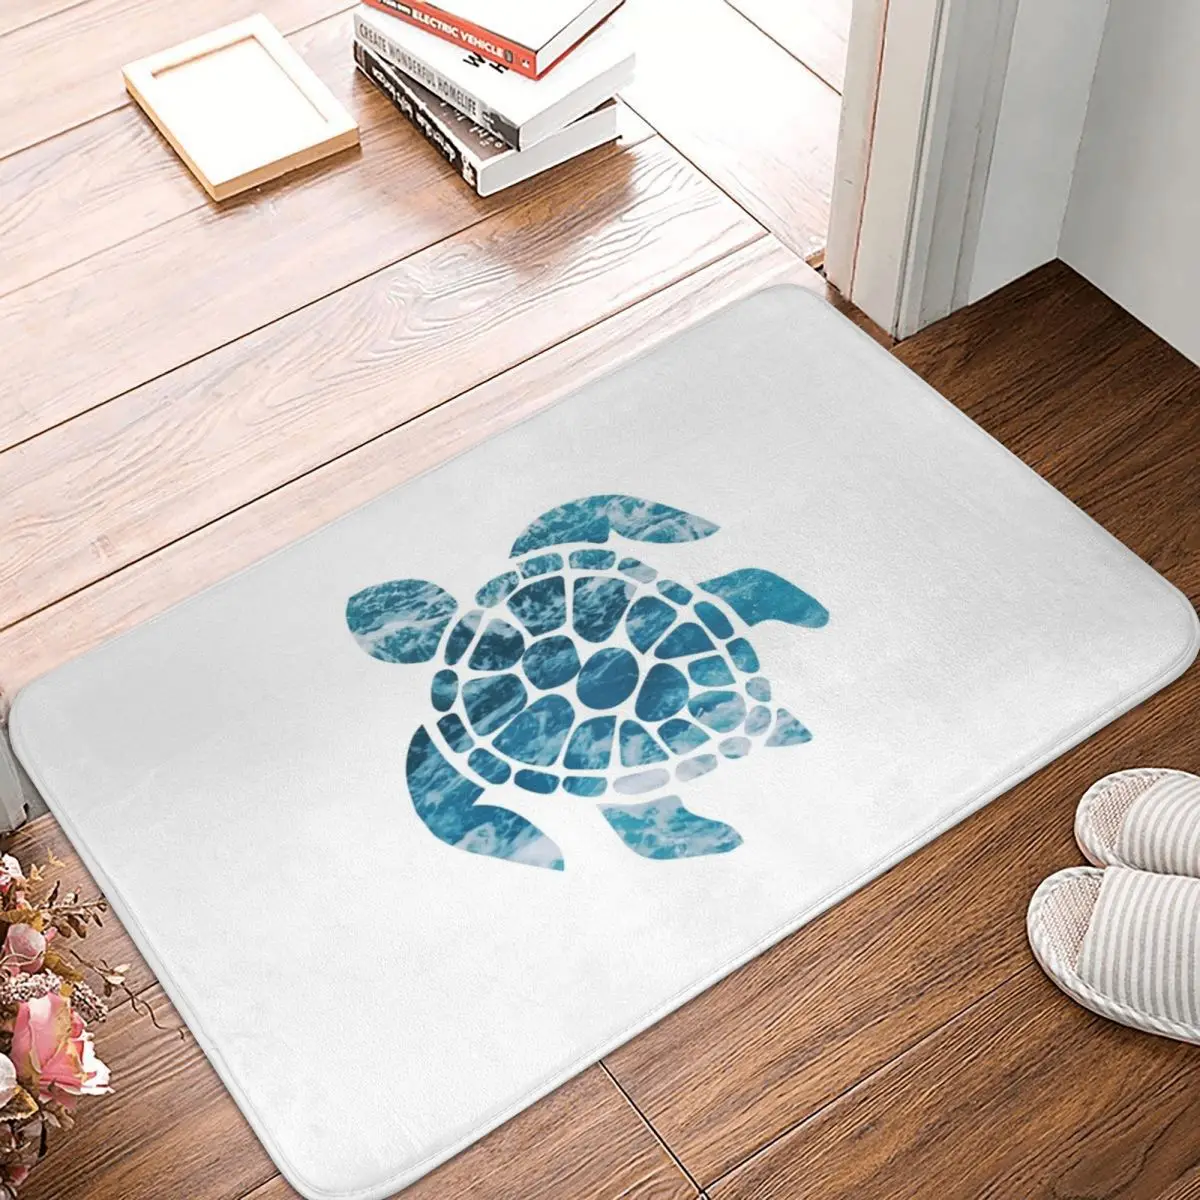 

Ocean Sea Turtle Doormat Carpet Mat Rug Polyester Non-Slip Floor Decor Bath Bathroom Kitchen Living Room Balcony Bedroom 40*60